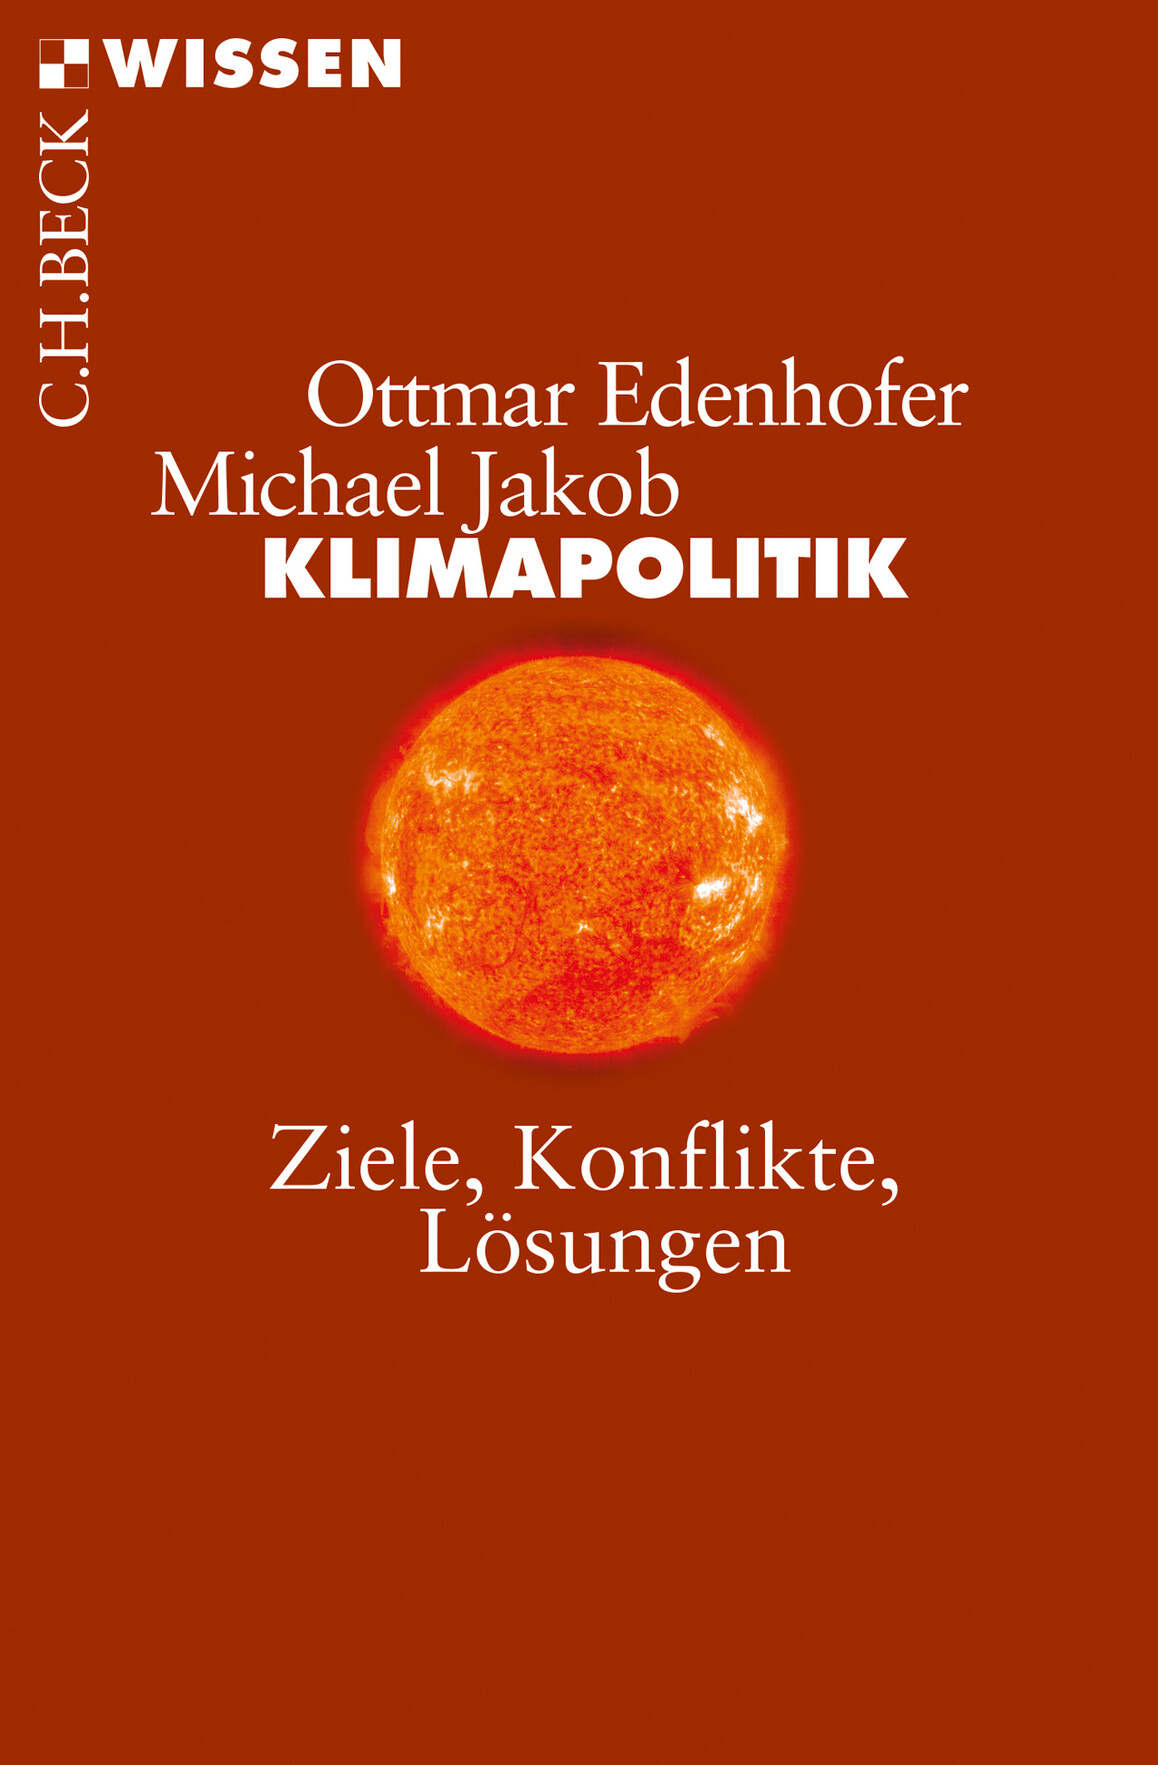 rotes Cover mit Bild von brennender Weltkugel in orange